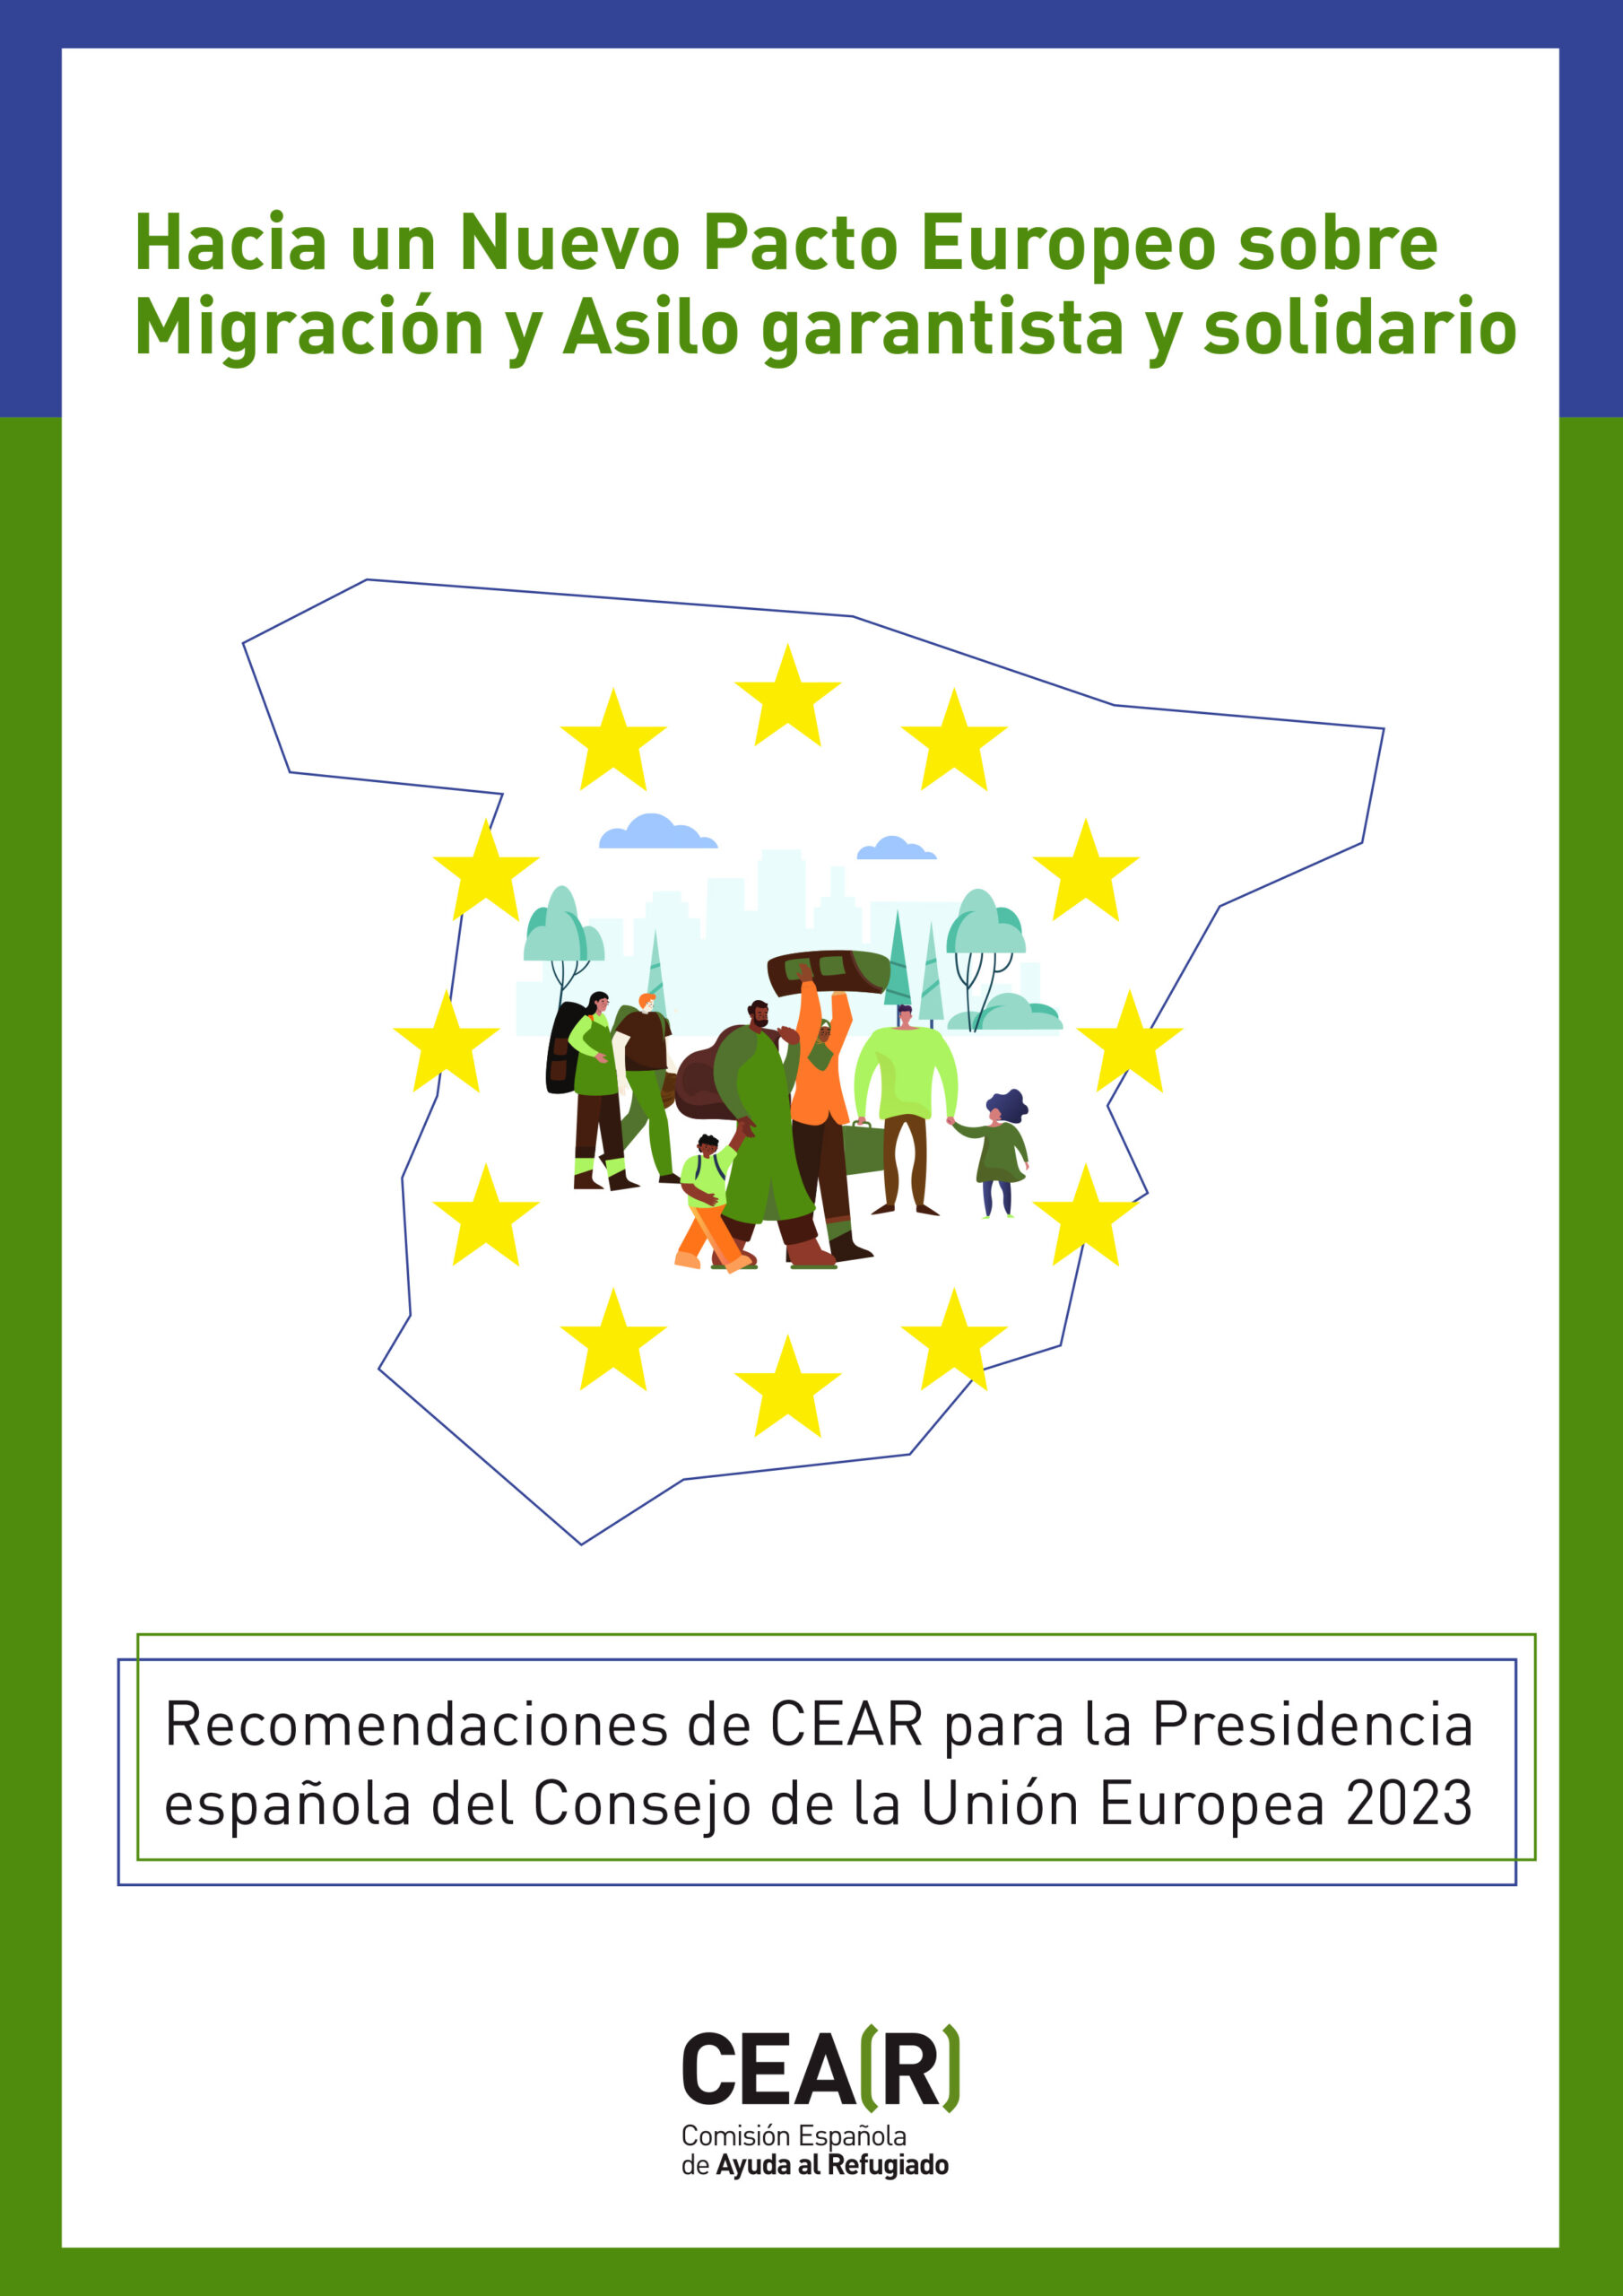 CEAR - presidencia UE - España - migración - asilo - recomendaciones